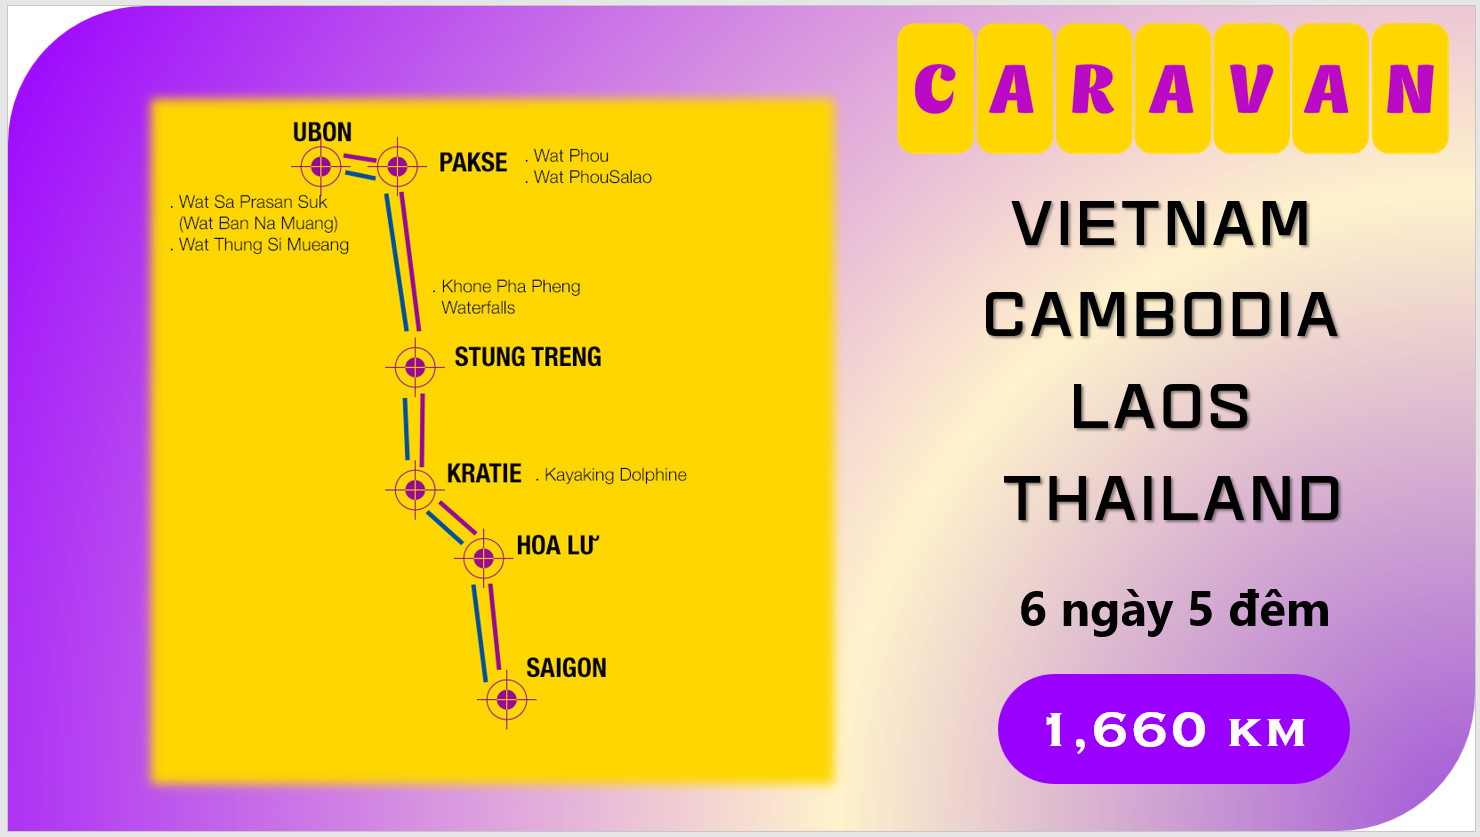 Tour caravan Cambodia Lào Thái 6 ngày 5 đêm